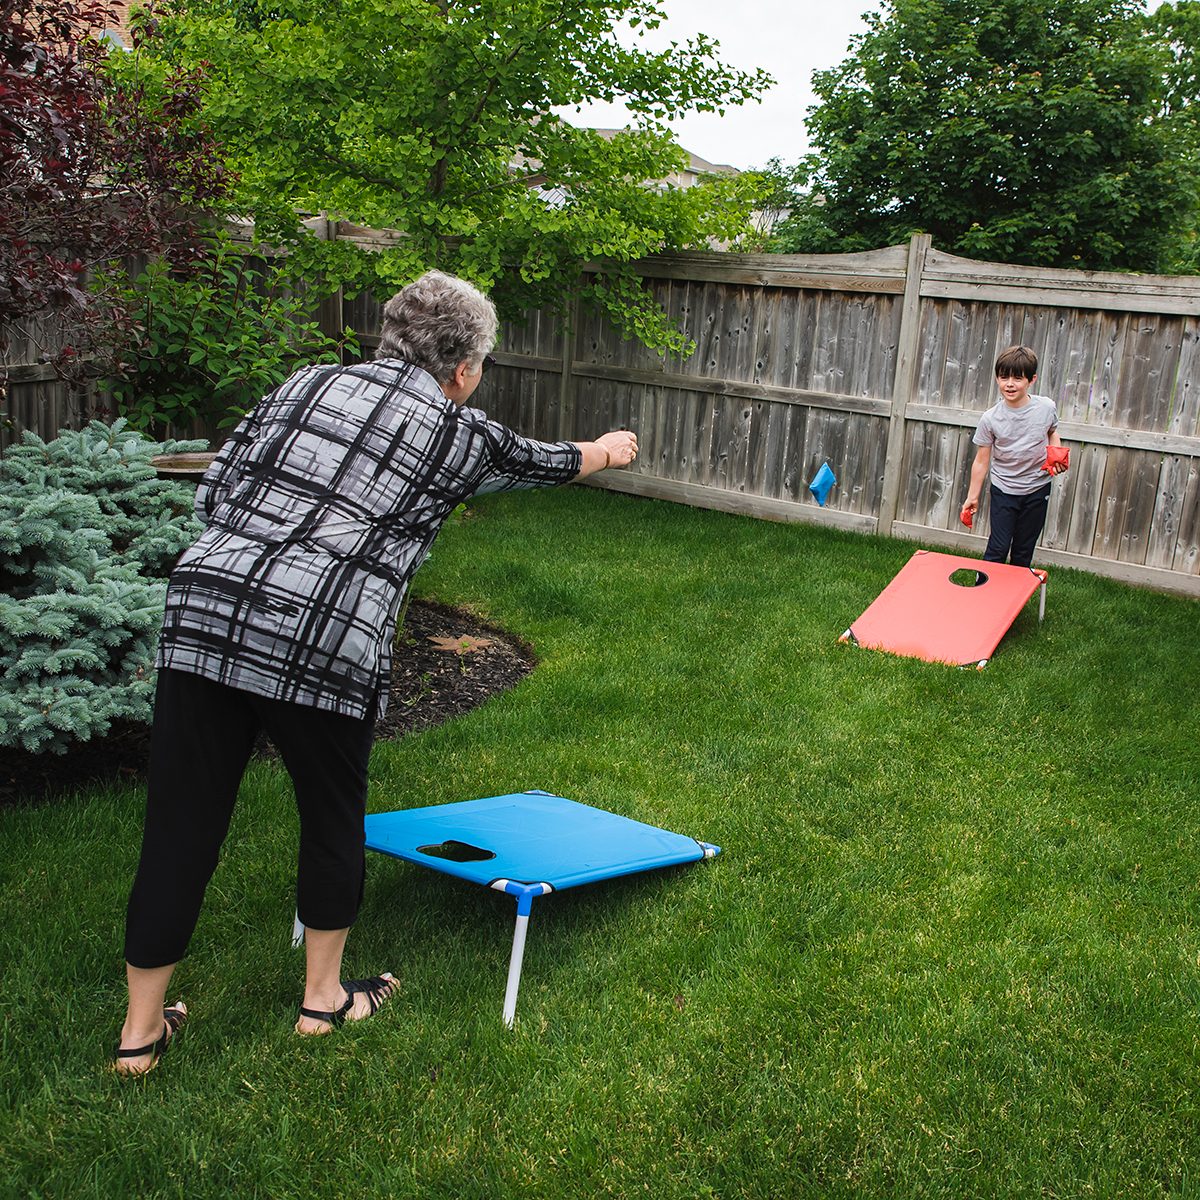 祖母和孙子在后院玩玉米洞游戏。